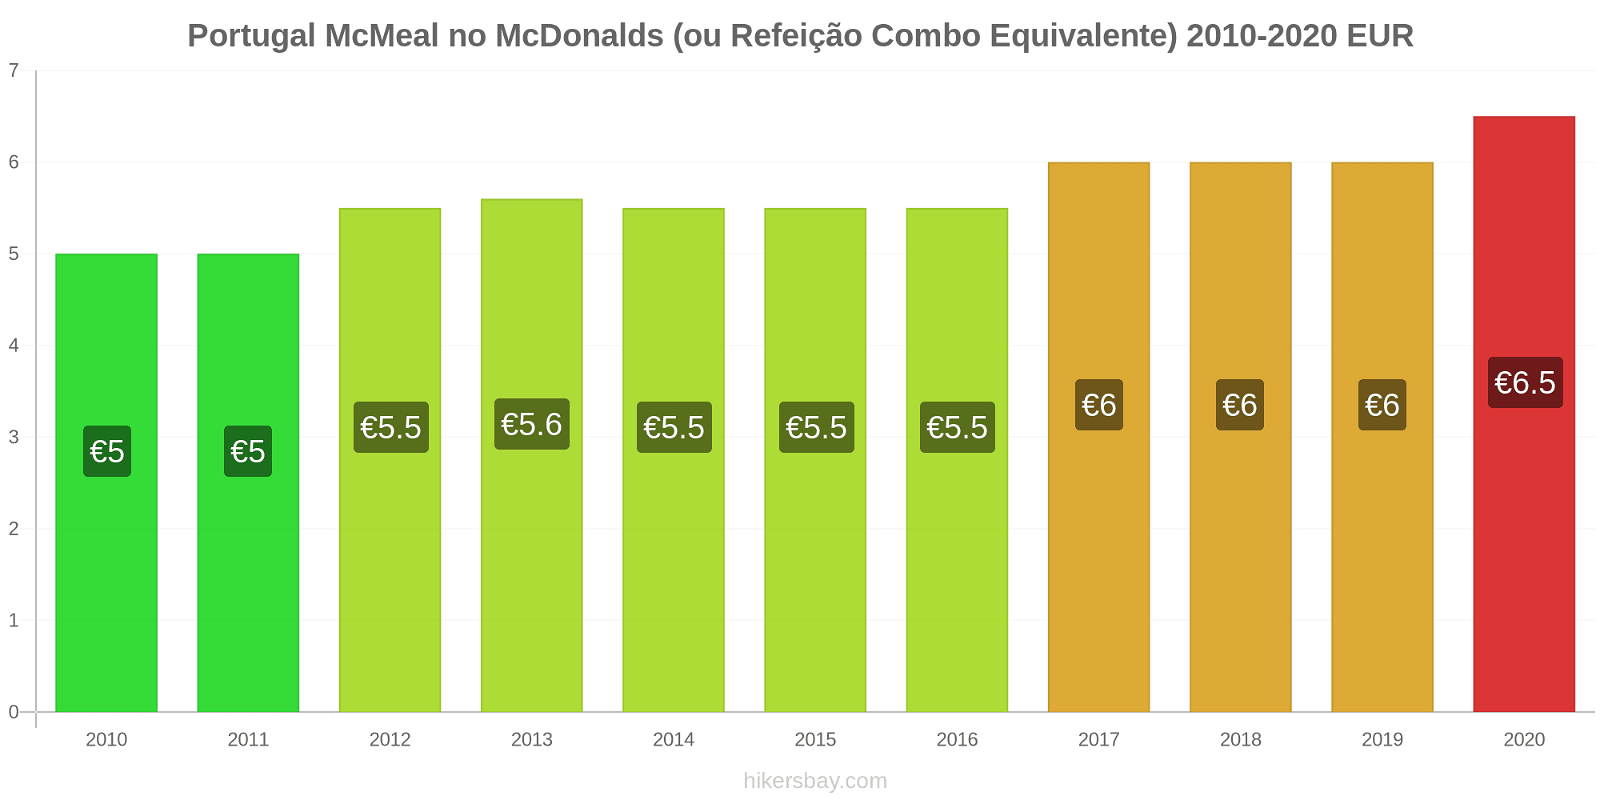 Portugal variação de preço McMeal no McDonald ' s (ou refeição Combo equivalente) hikersbay.com